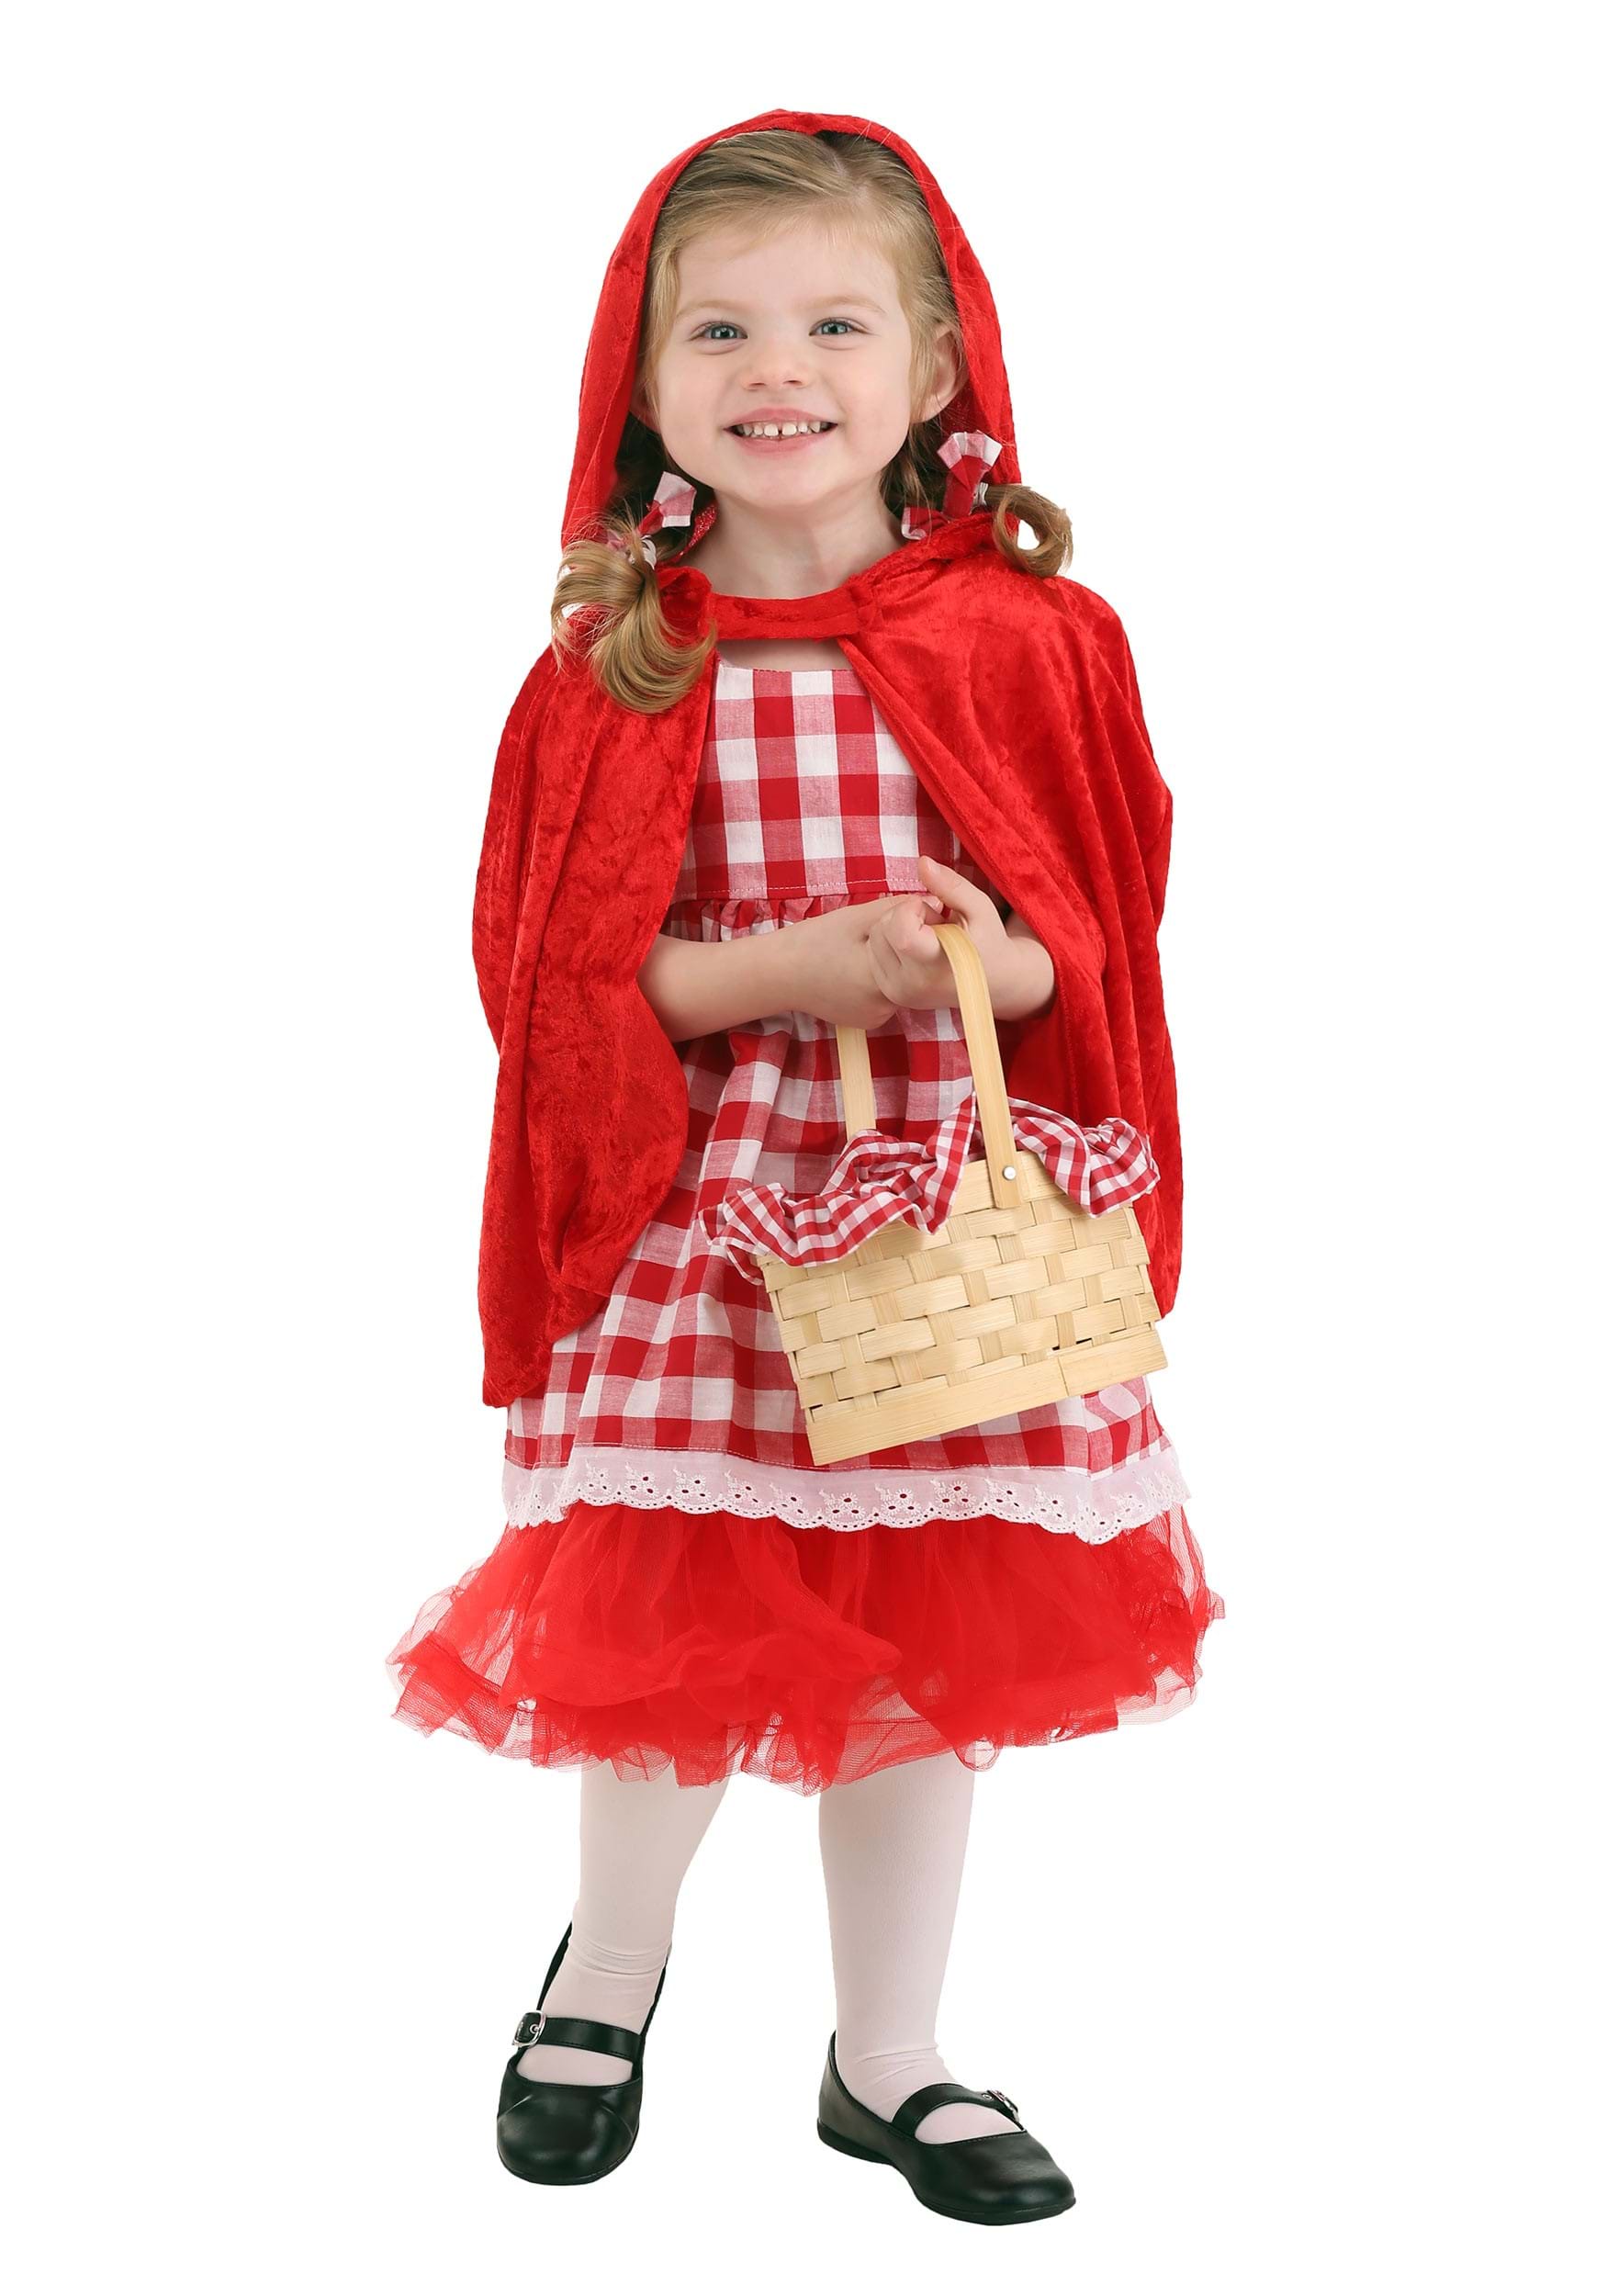 Toddler Red Riding Hood Tutu Costume